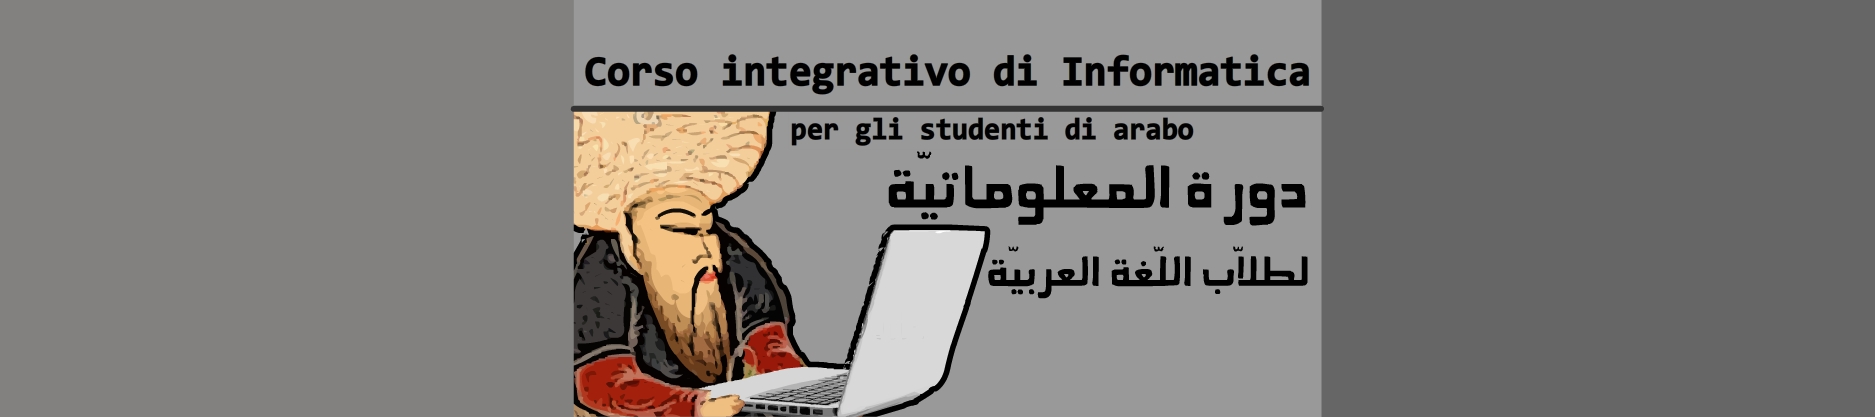 Corso integrativo di Informatica online per gli studenti di arabo